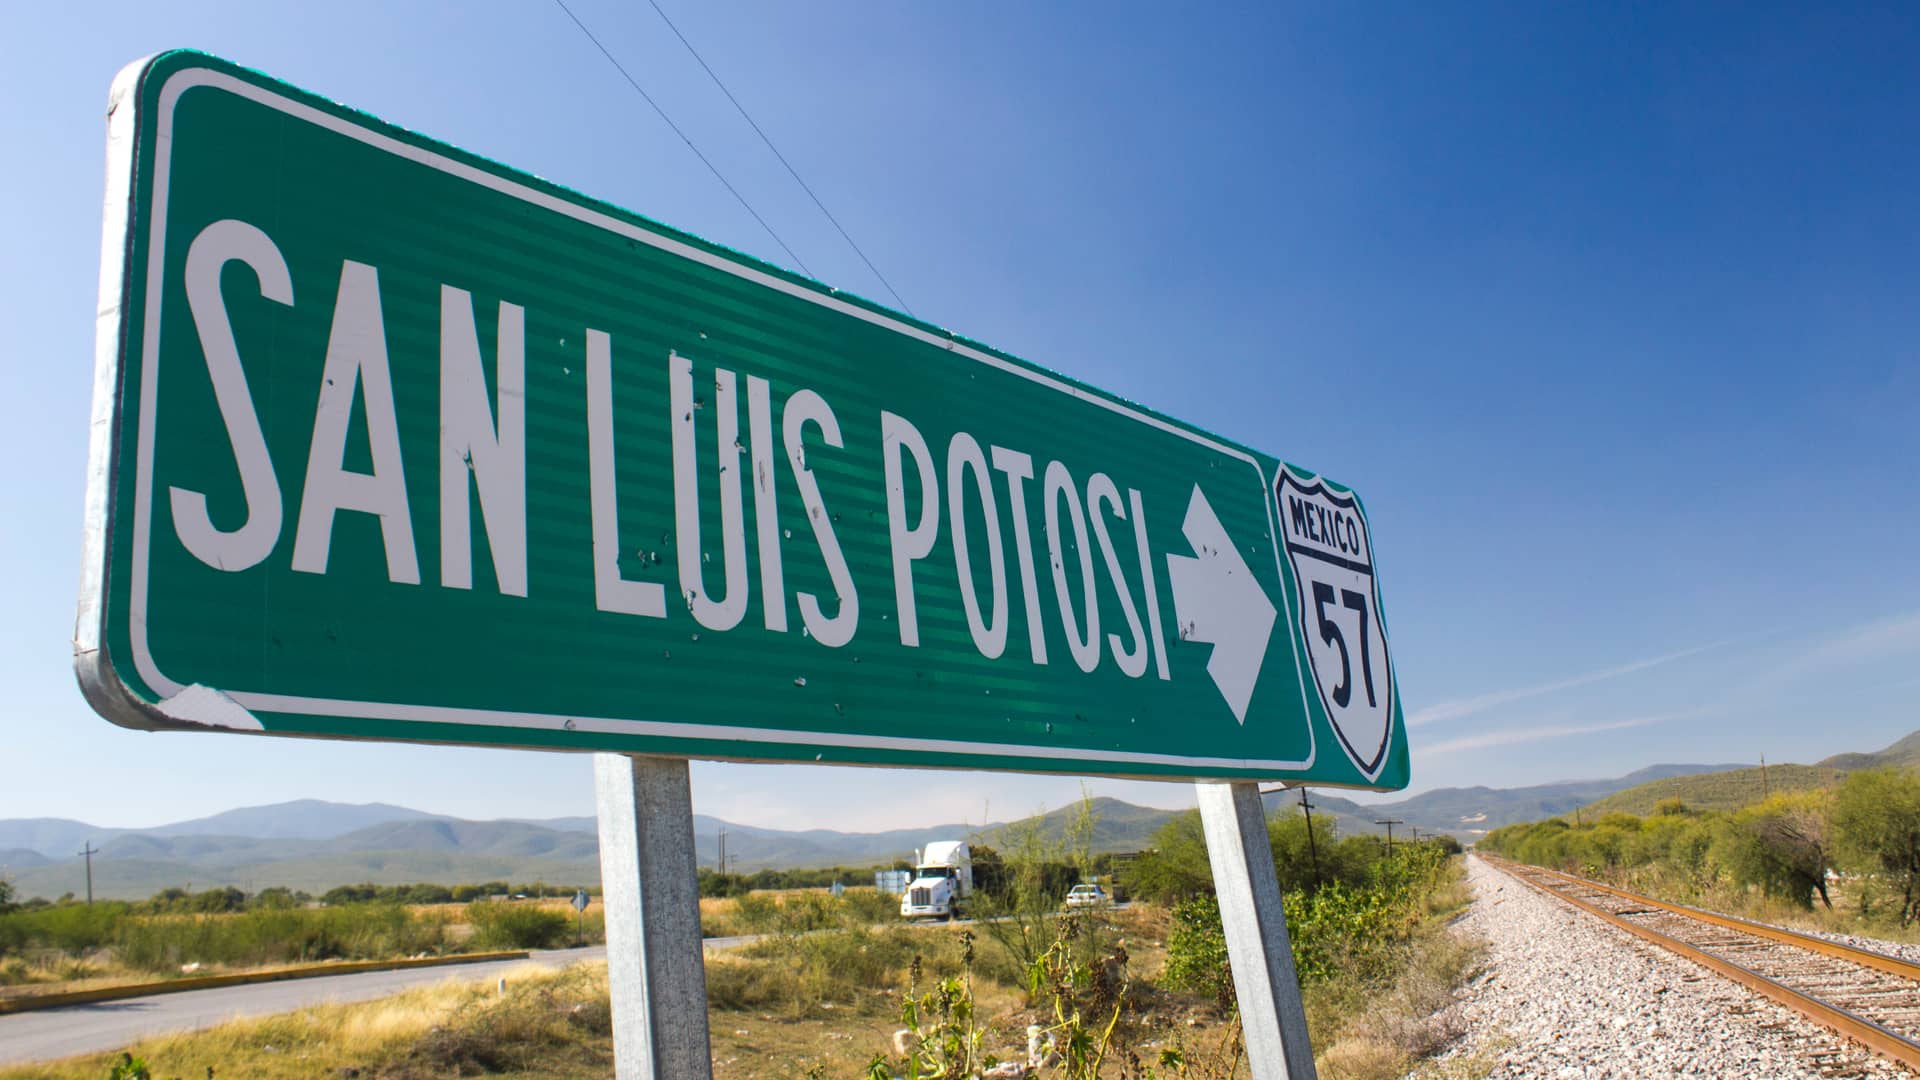 un cartel de la carretera de san luis de potosi para representar las localidades de internet como slp